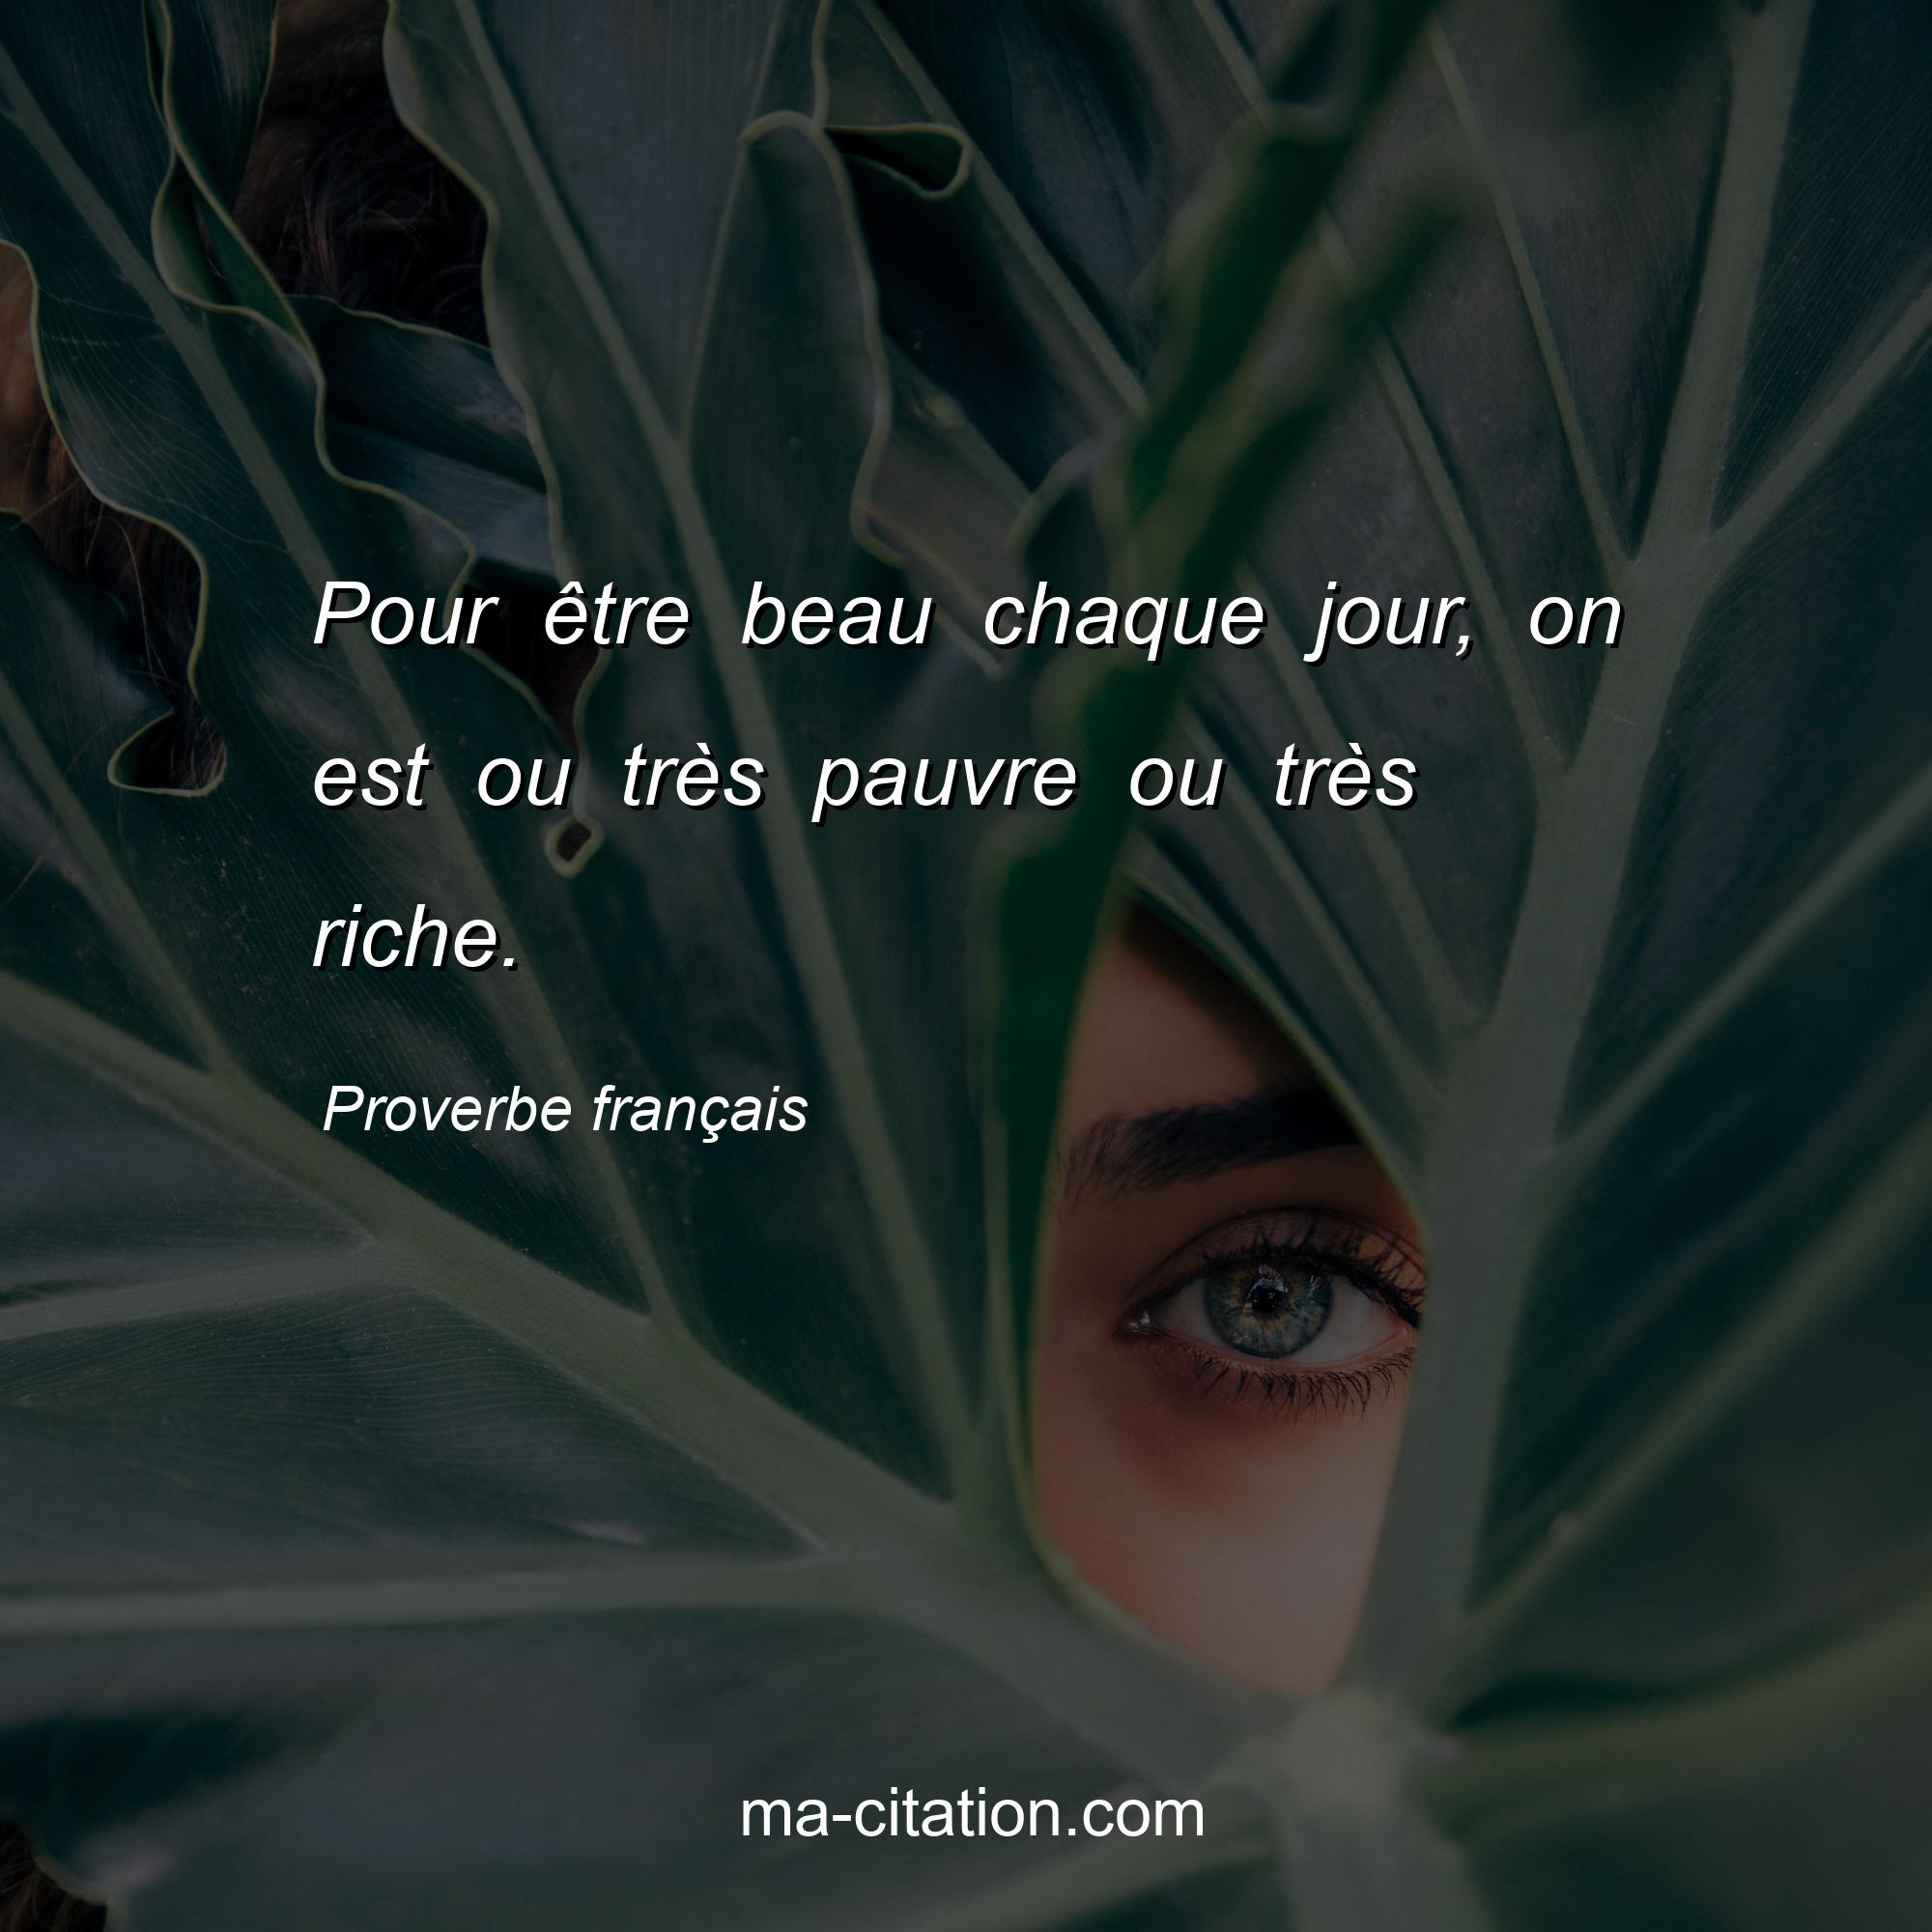 Proverbe français : Pour être beau chaque jour, on est ou très pauvre ou très riche.